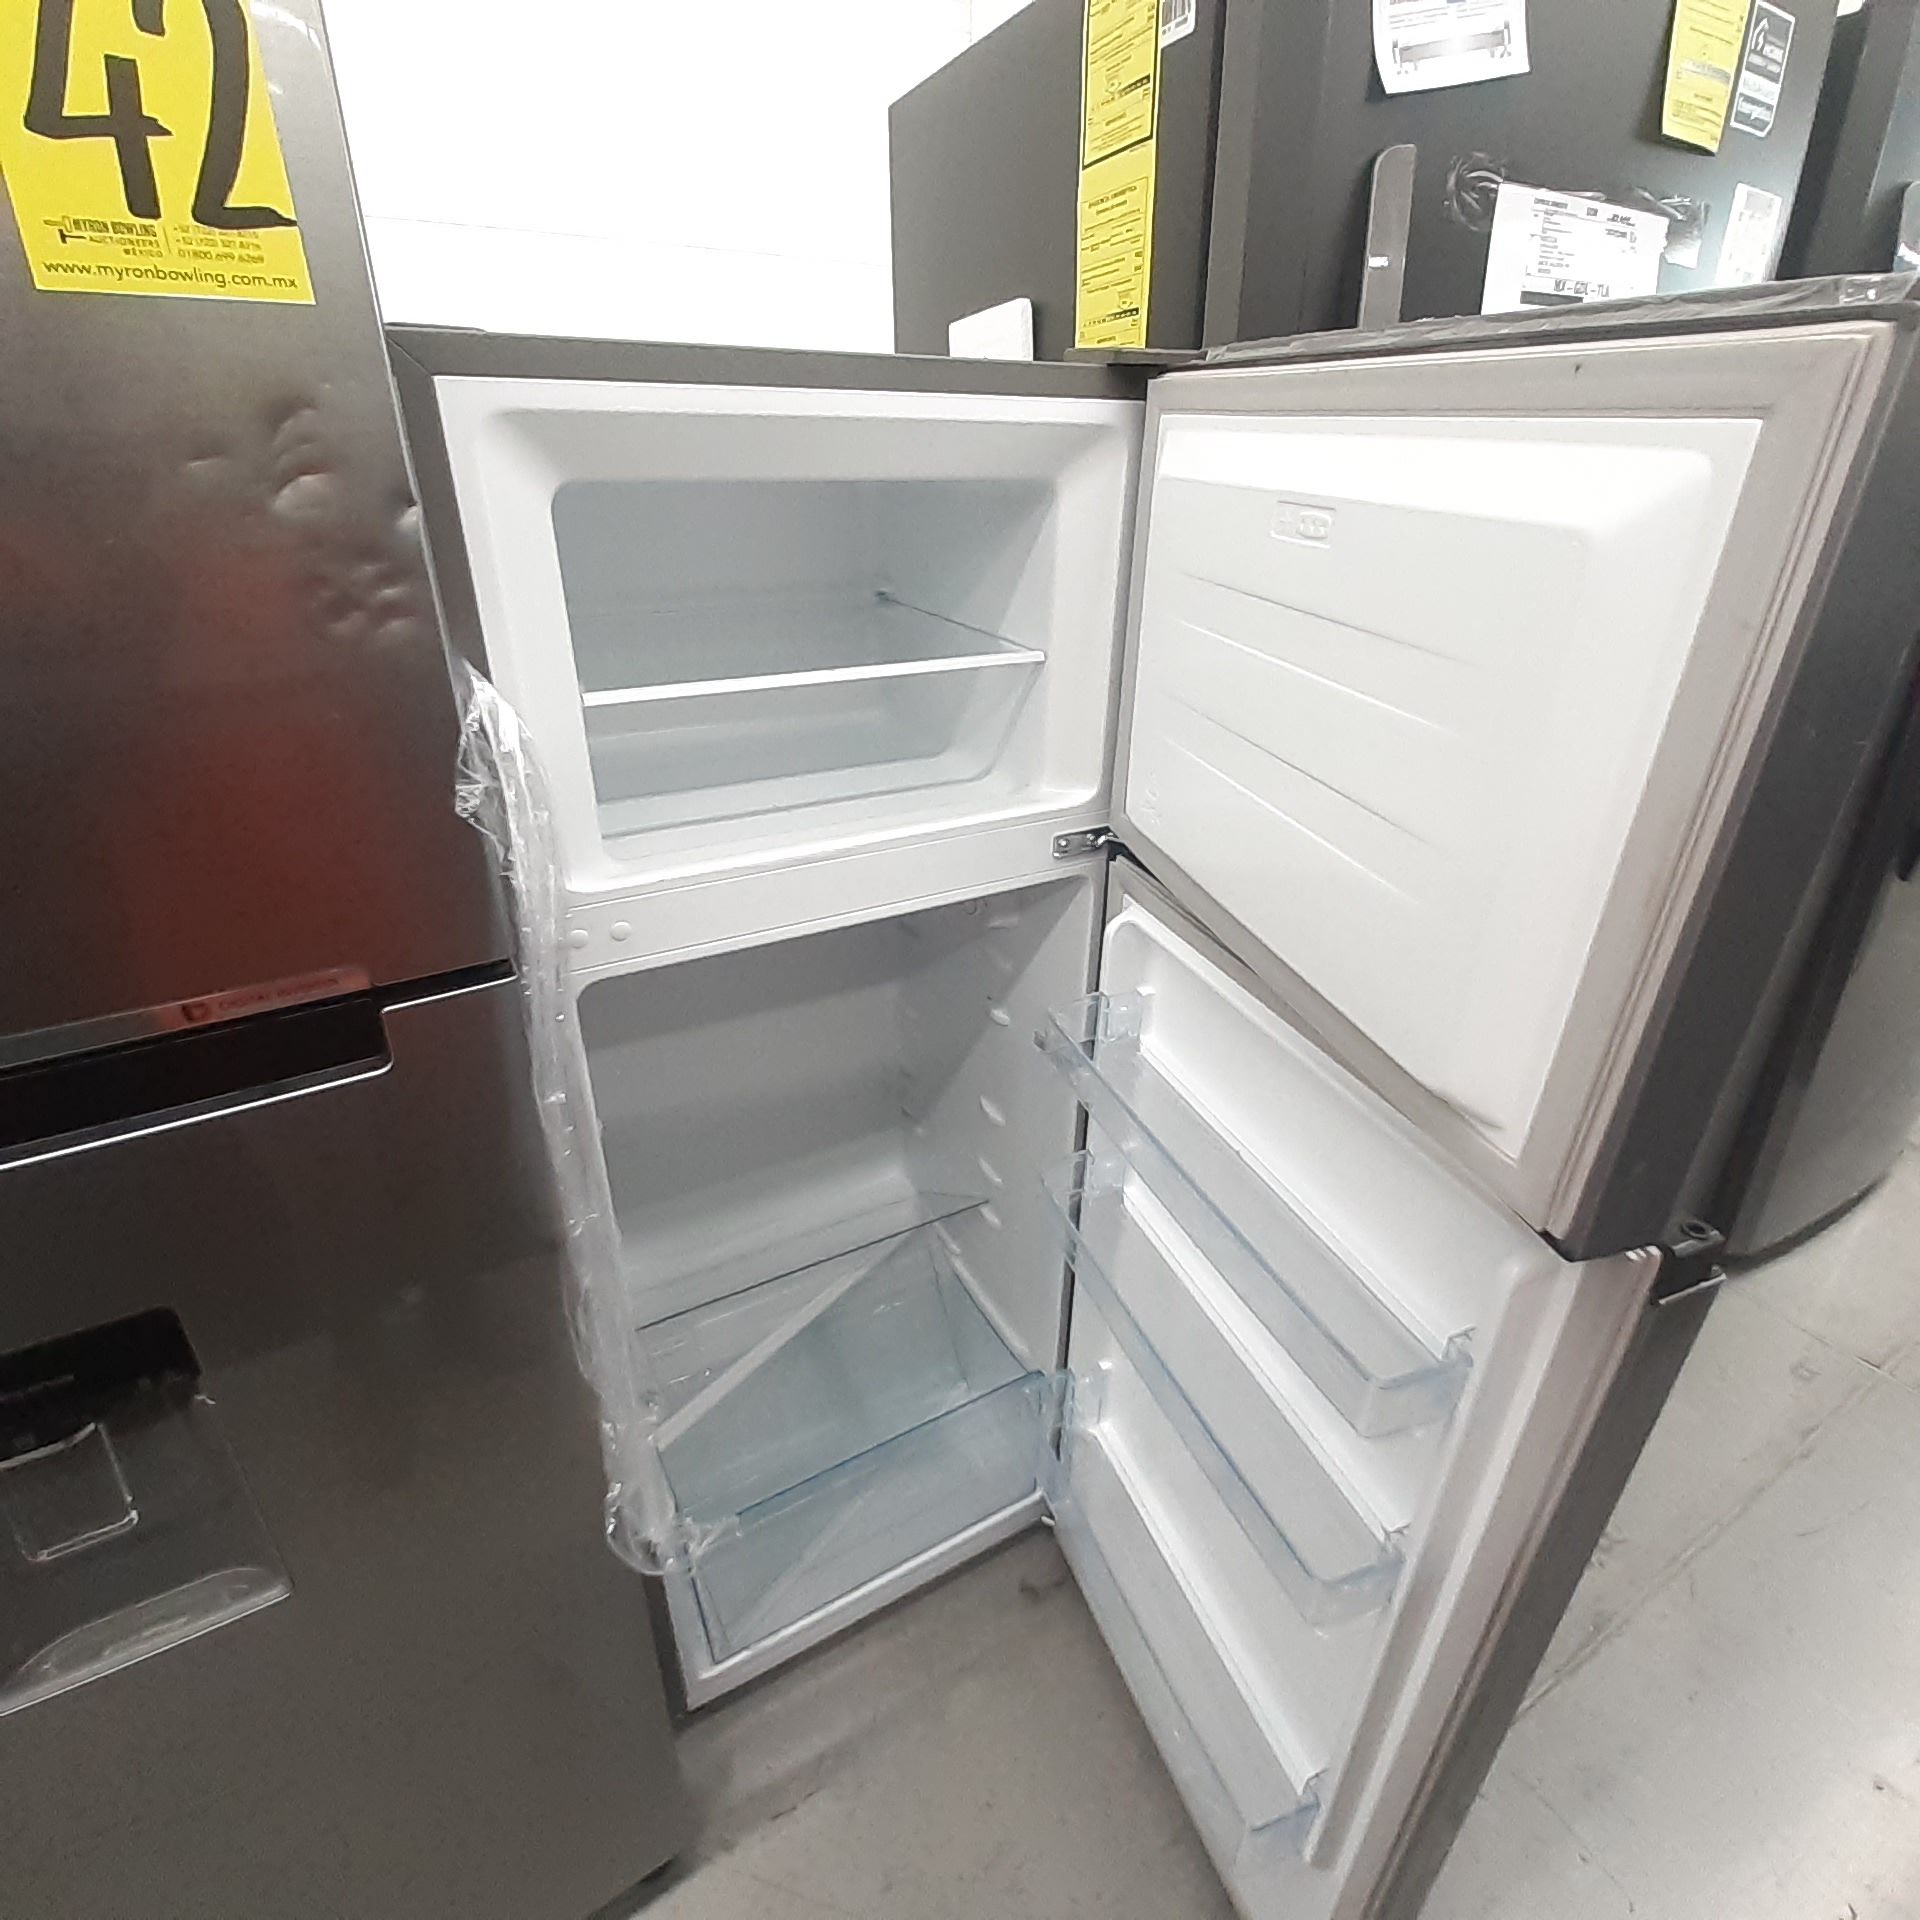 Lote De 2 Refrigeradores: 1 Refrigerador Con Dispensador De Agua Marca Samsung, 1 Refrigerador Marca - Image 13 of 18